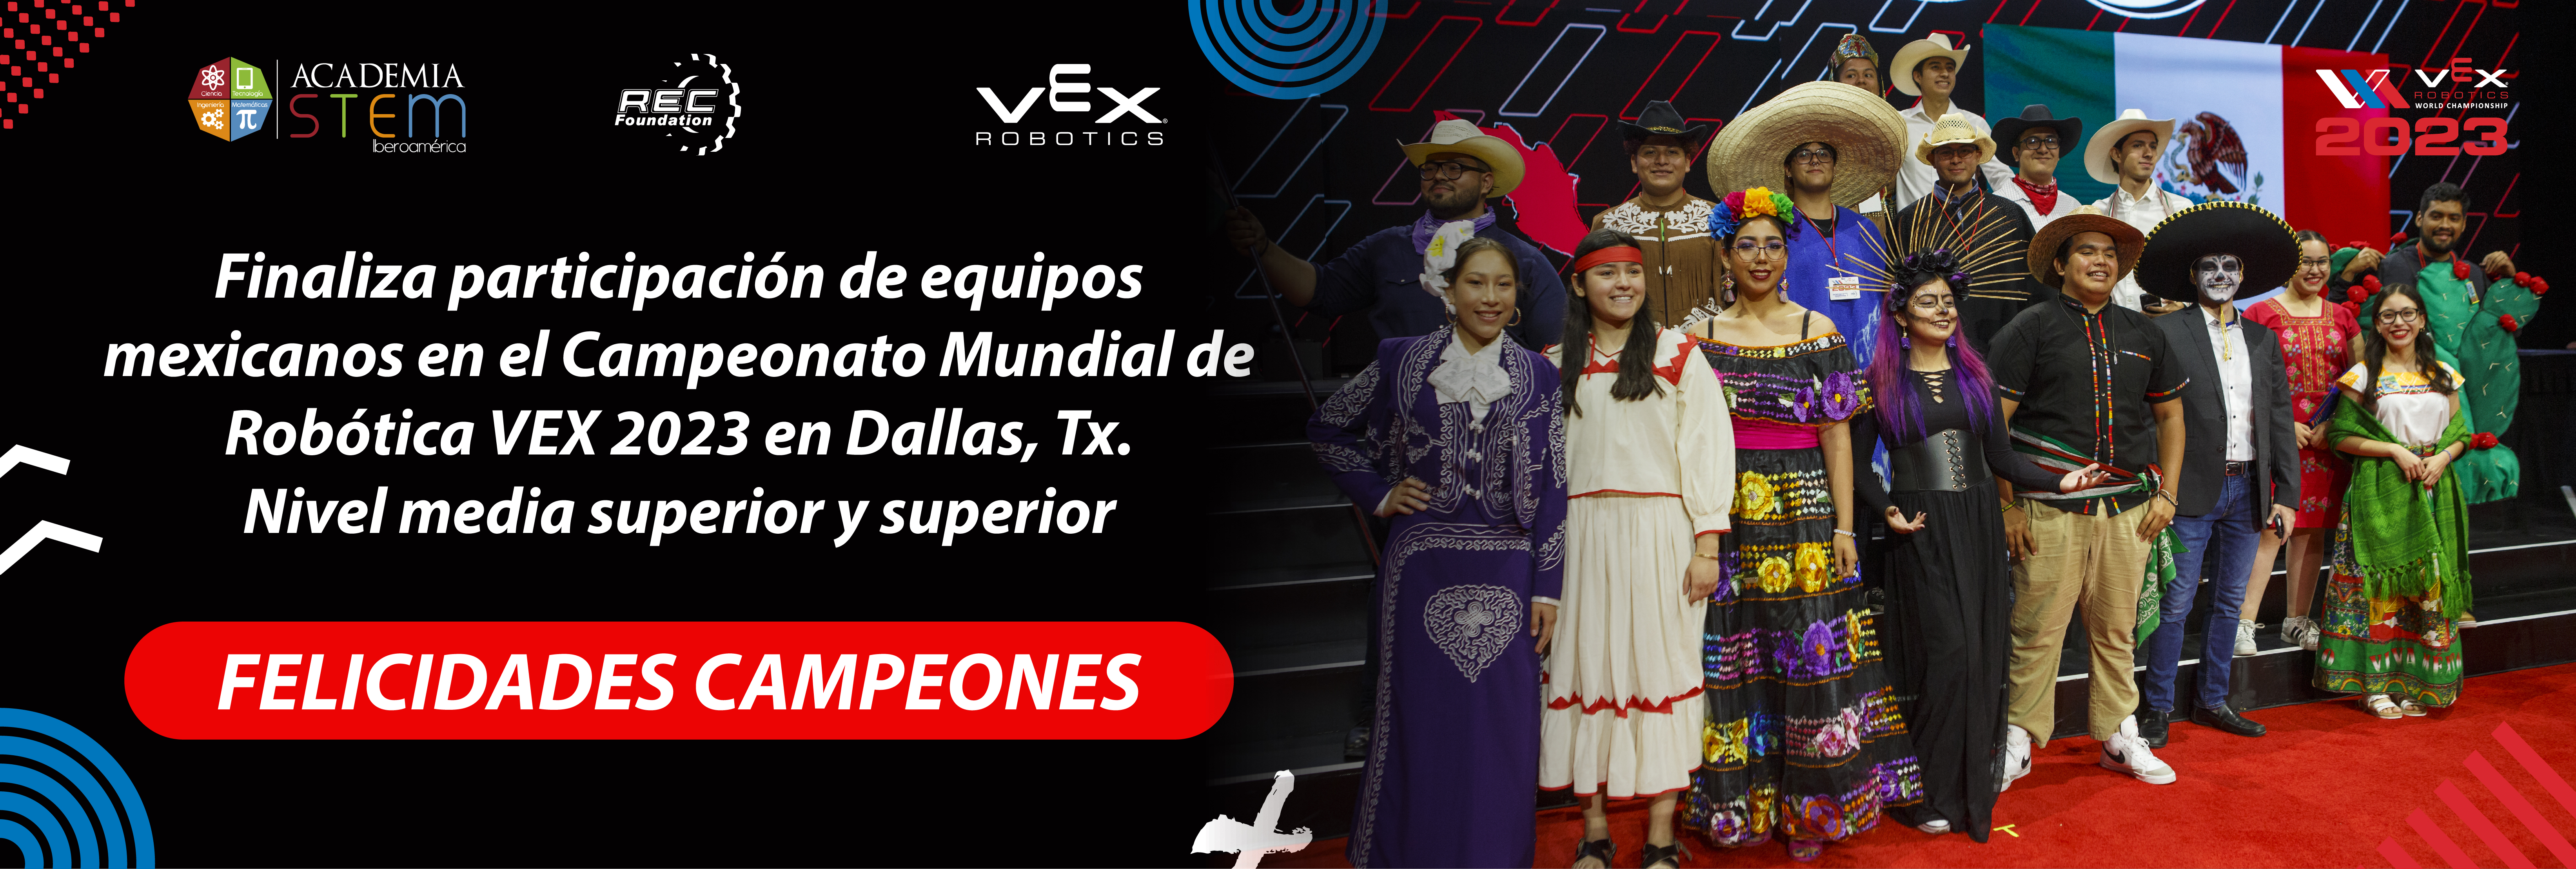 Grandes Campeones en el Campeonato Mundial VEX ROBOTICS 2023